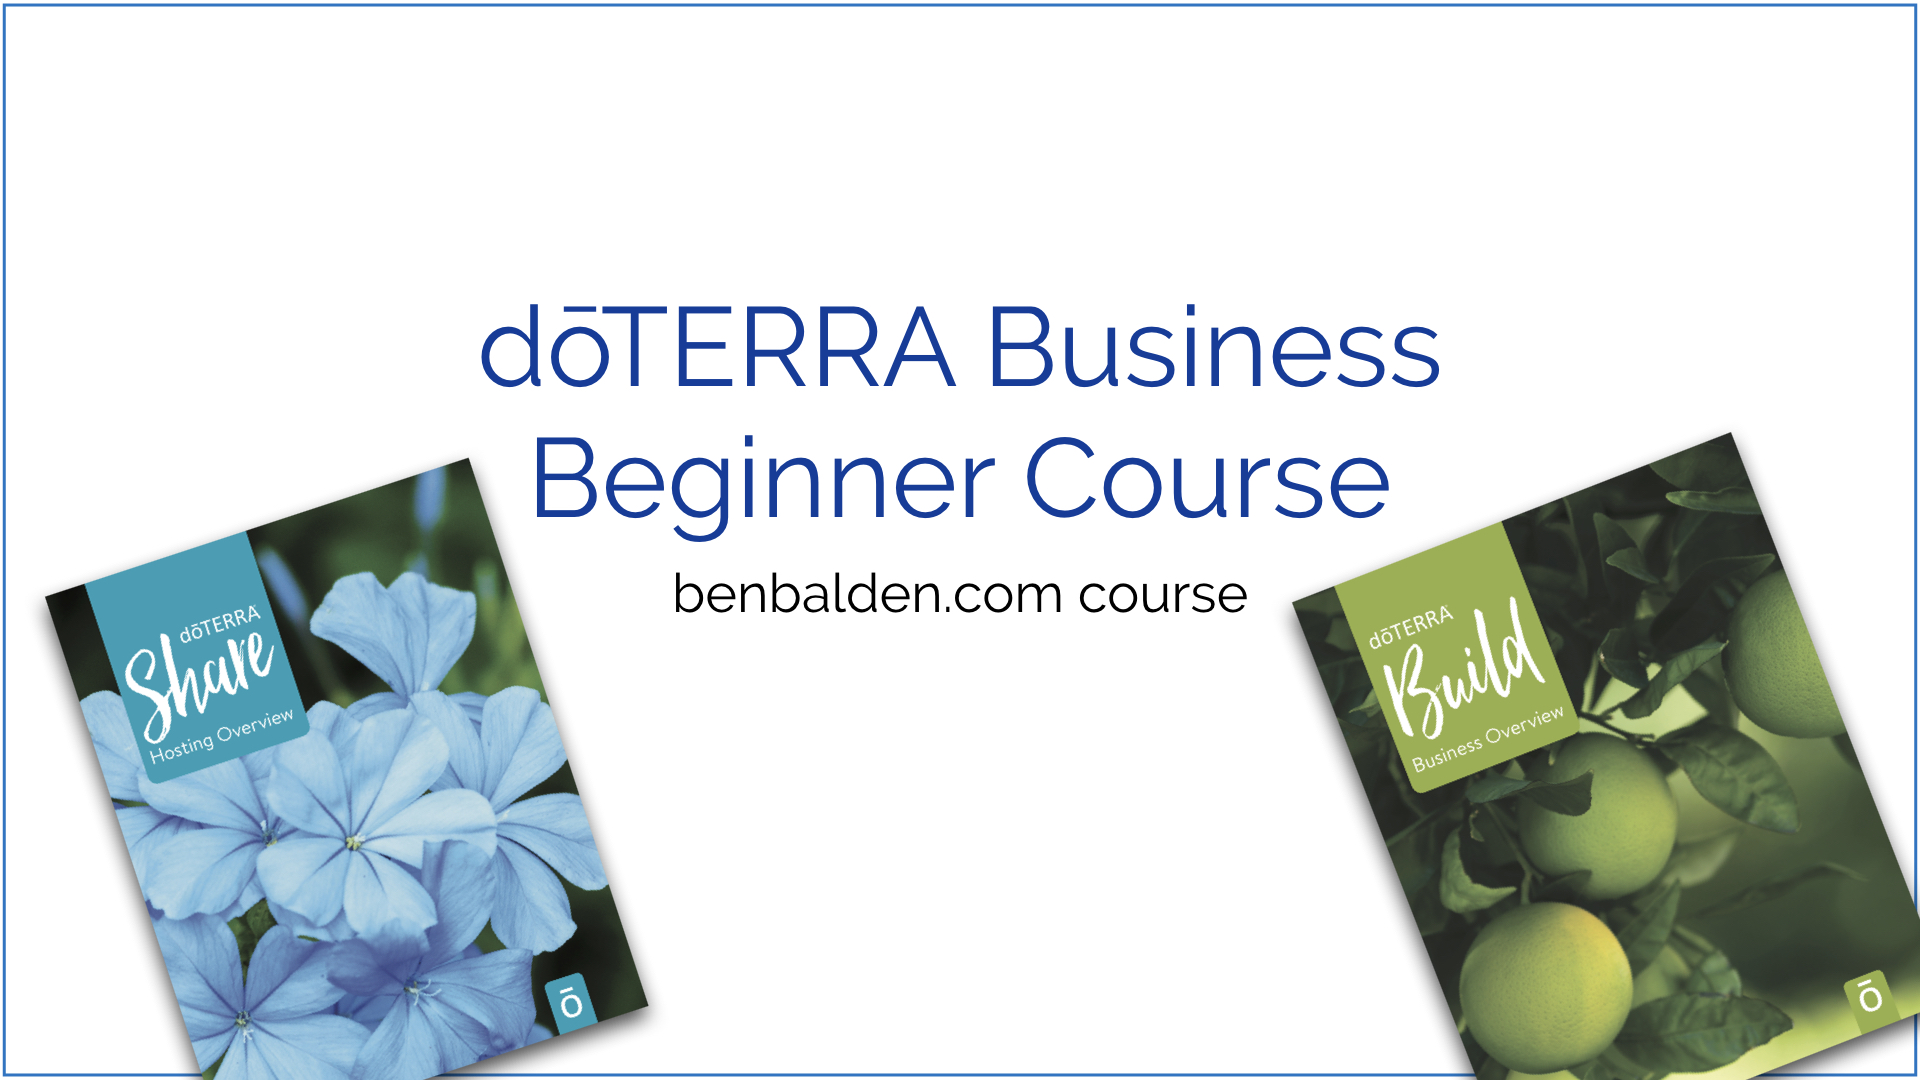 doTERRA Business Beginner Course